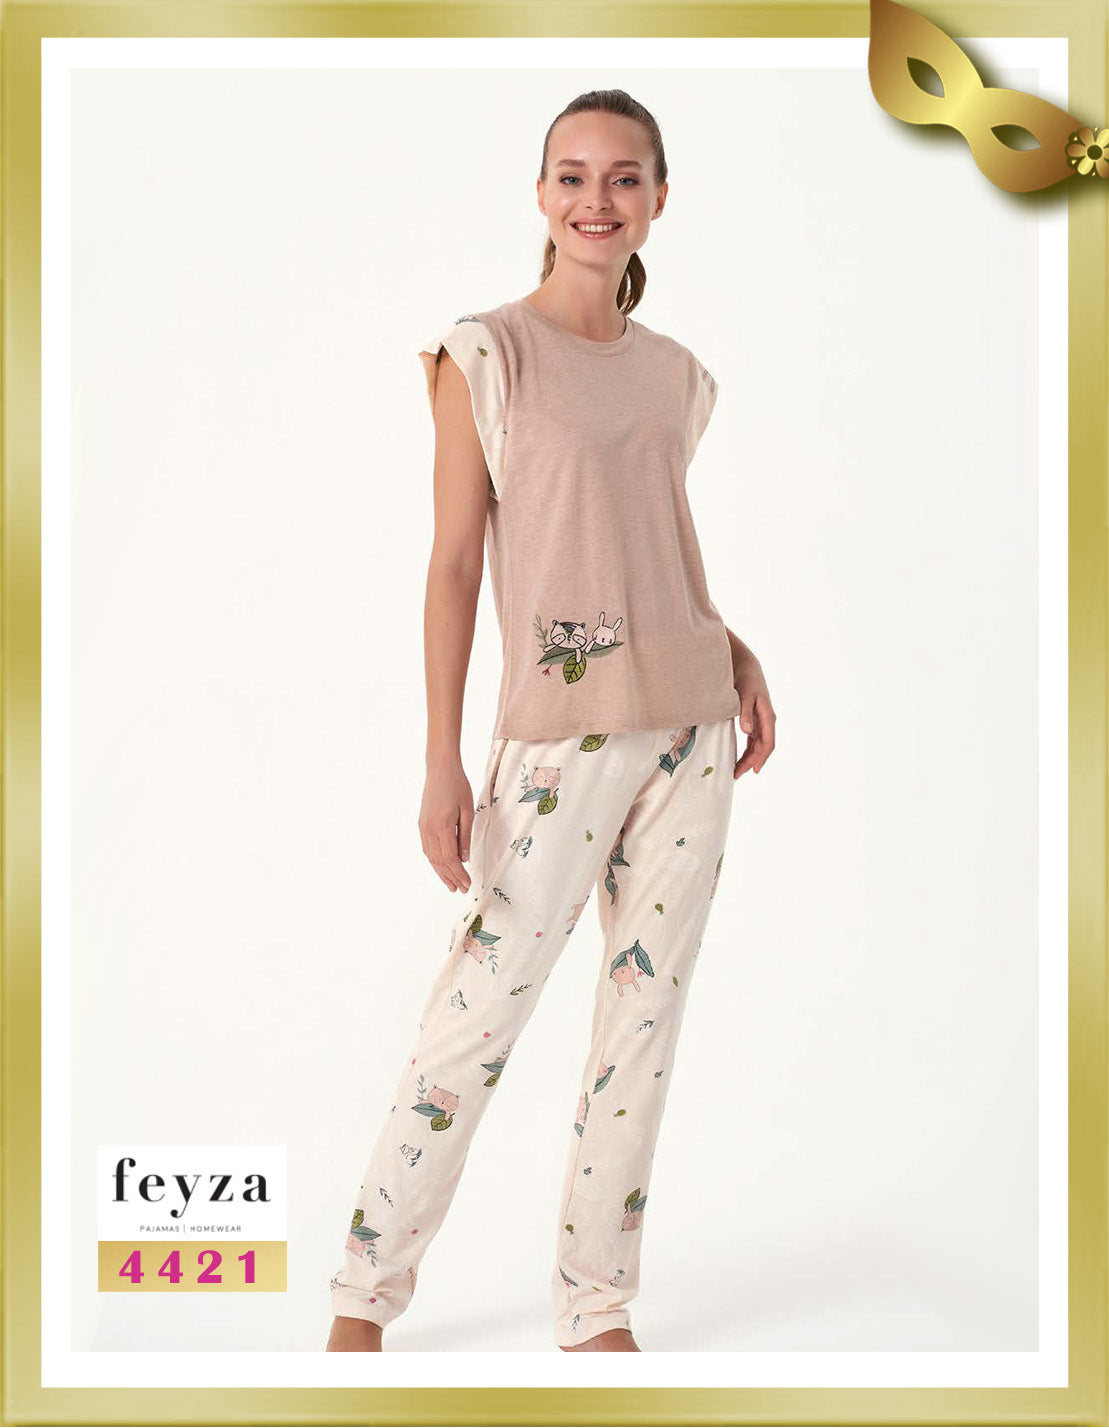 Feyza Short Sleeves Long Printed Pajamas 4421 Just Right